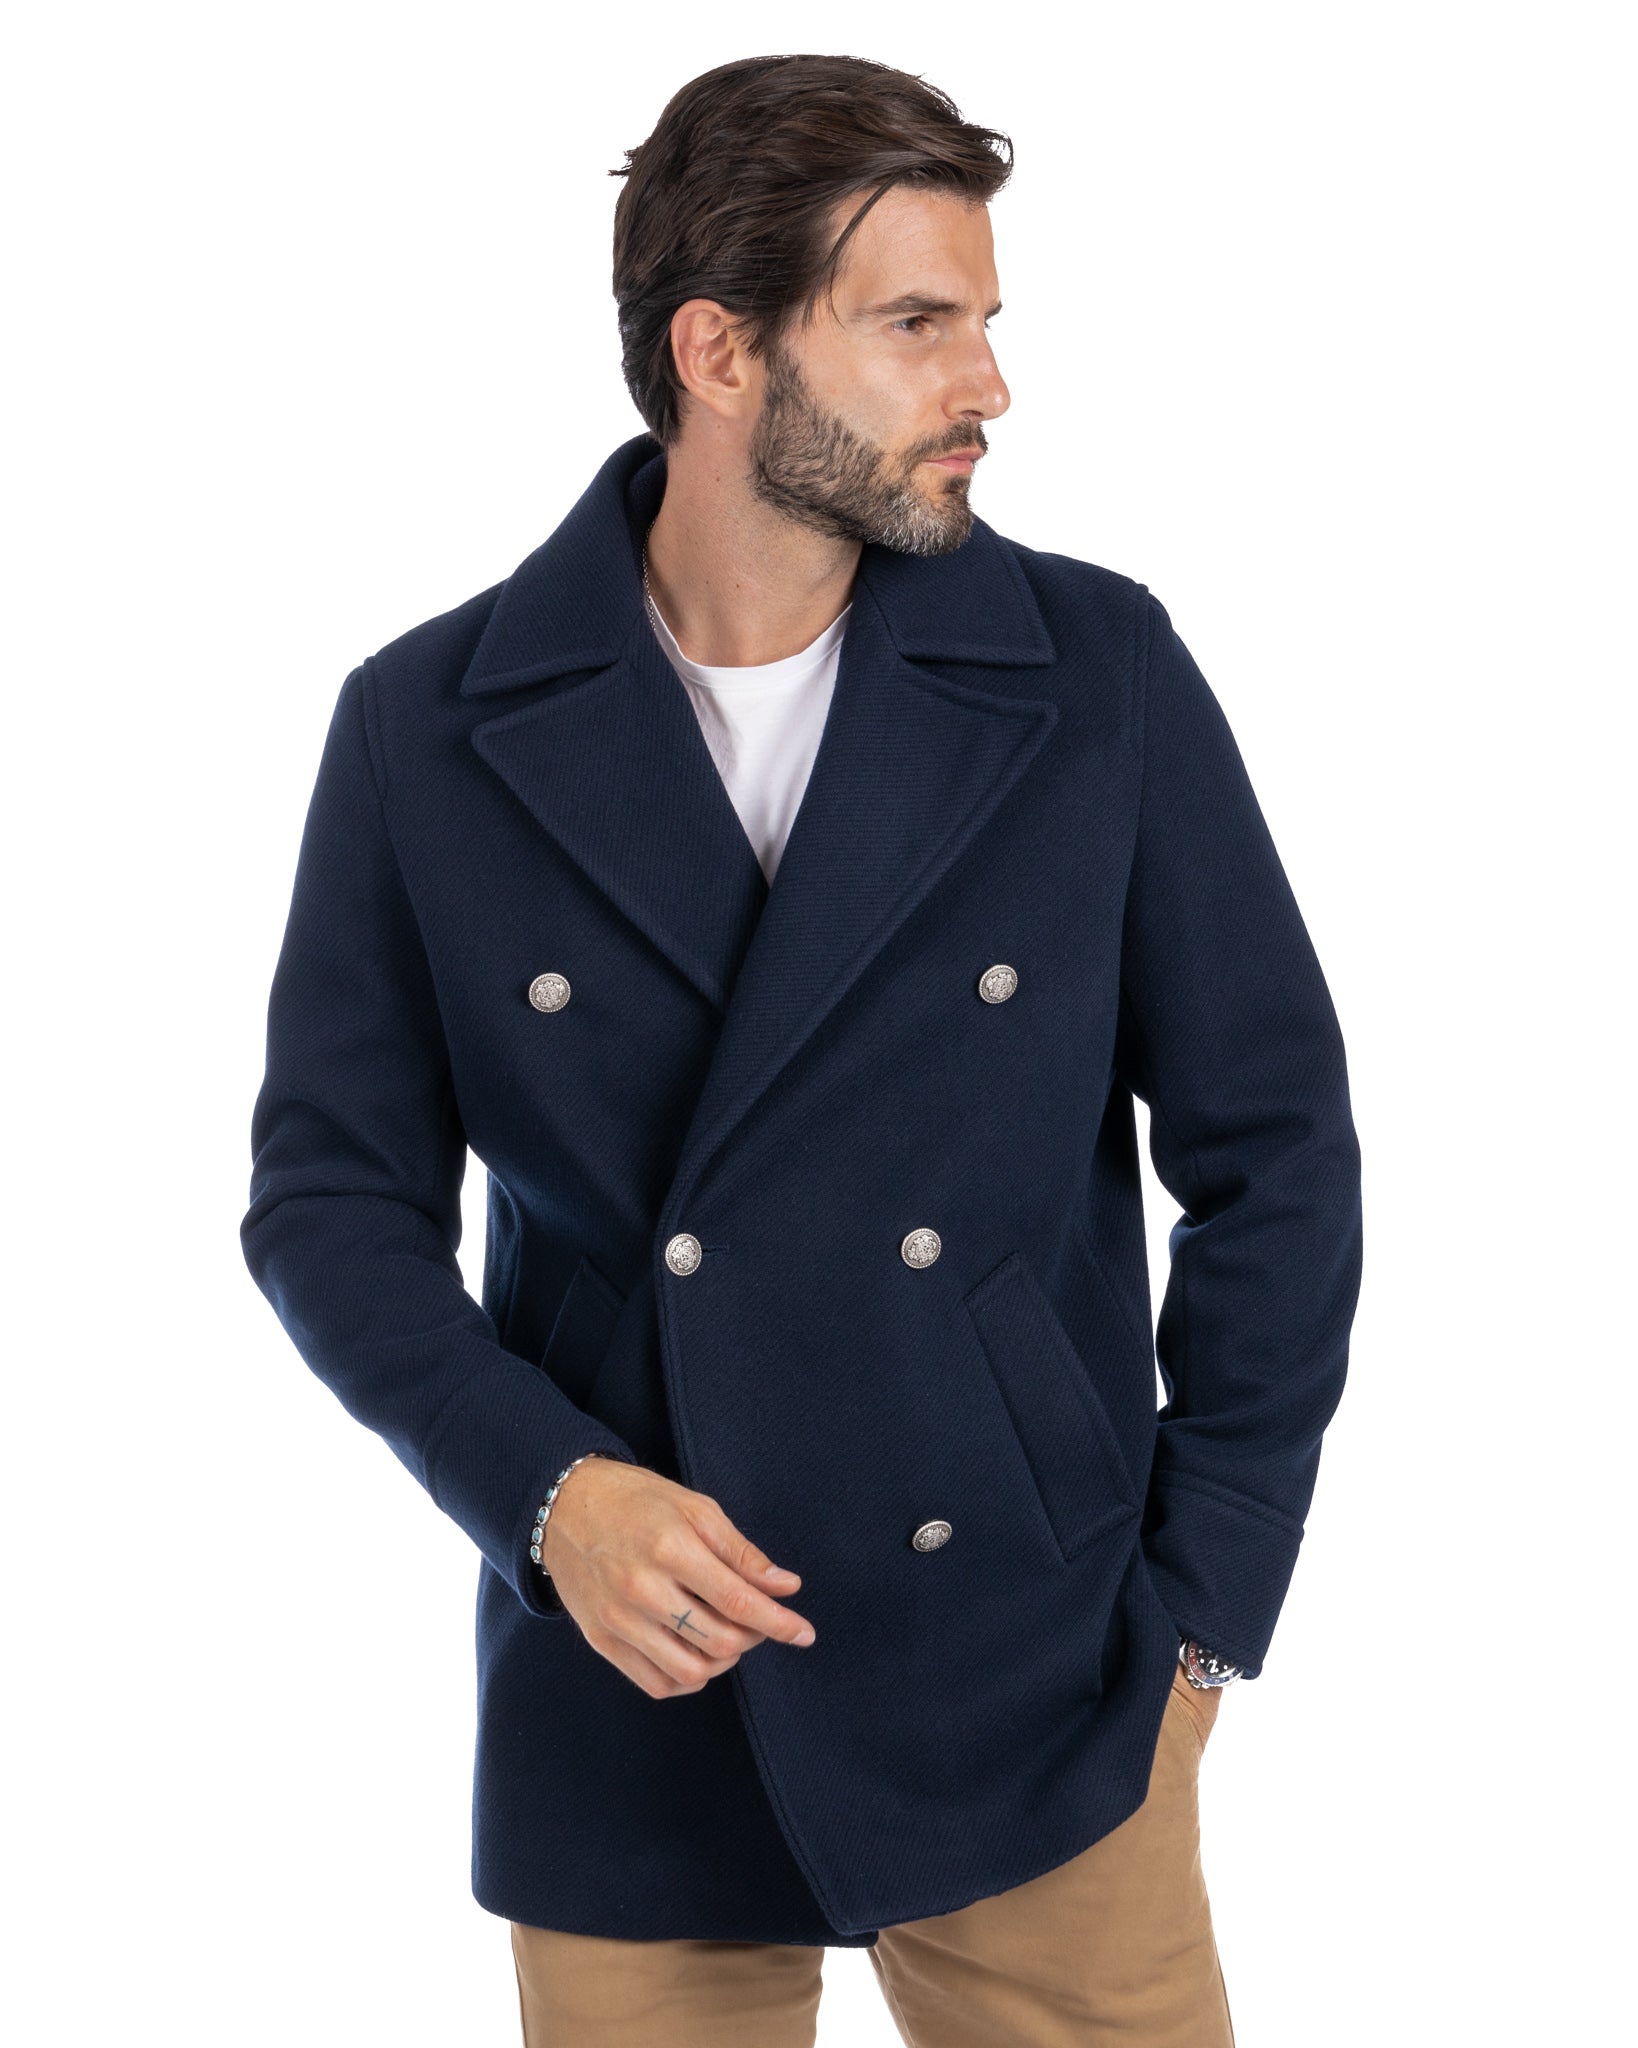 David - blue 3/4 coat